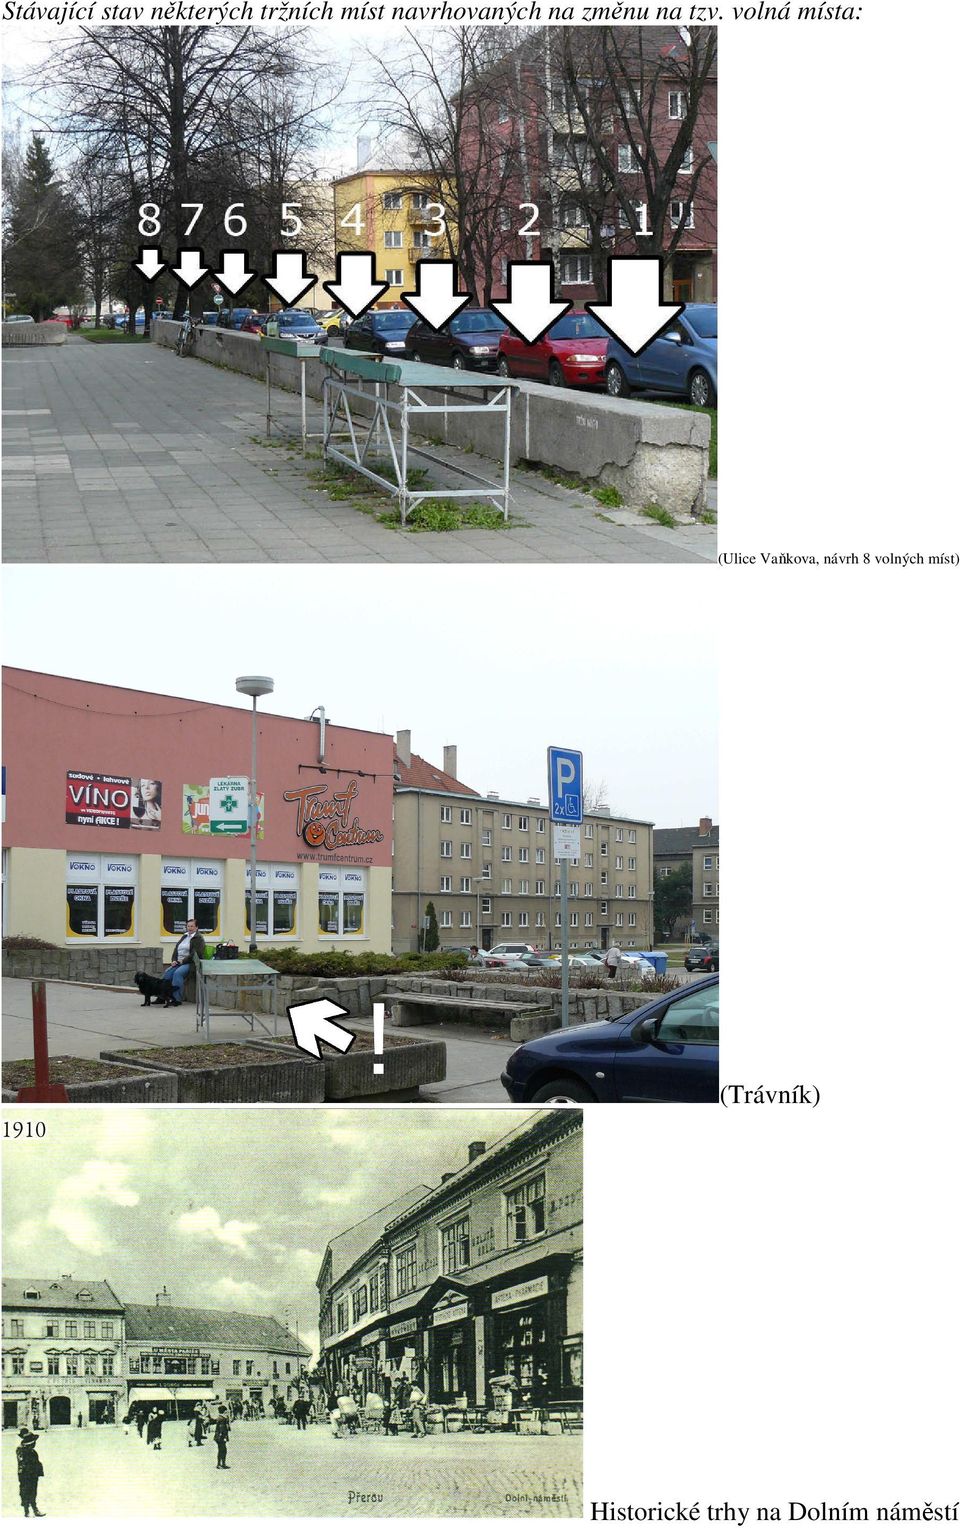 volná místa: (Ulice Vaňkova, návrh 8